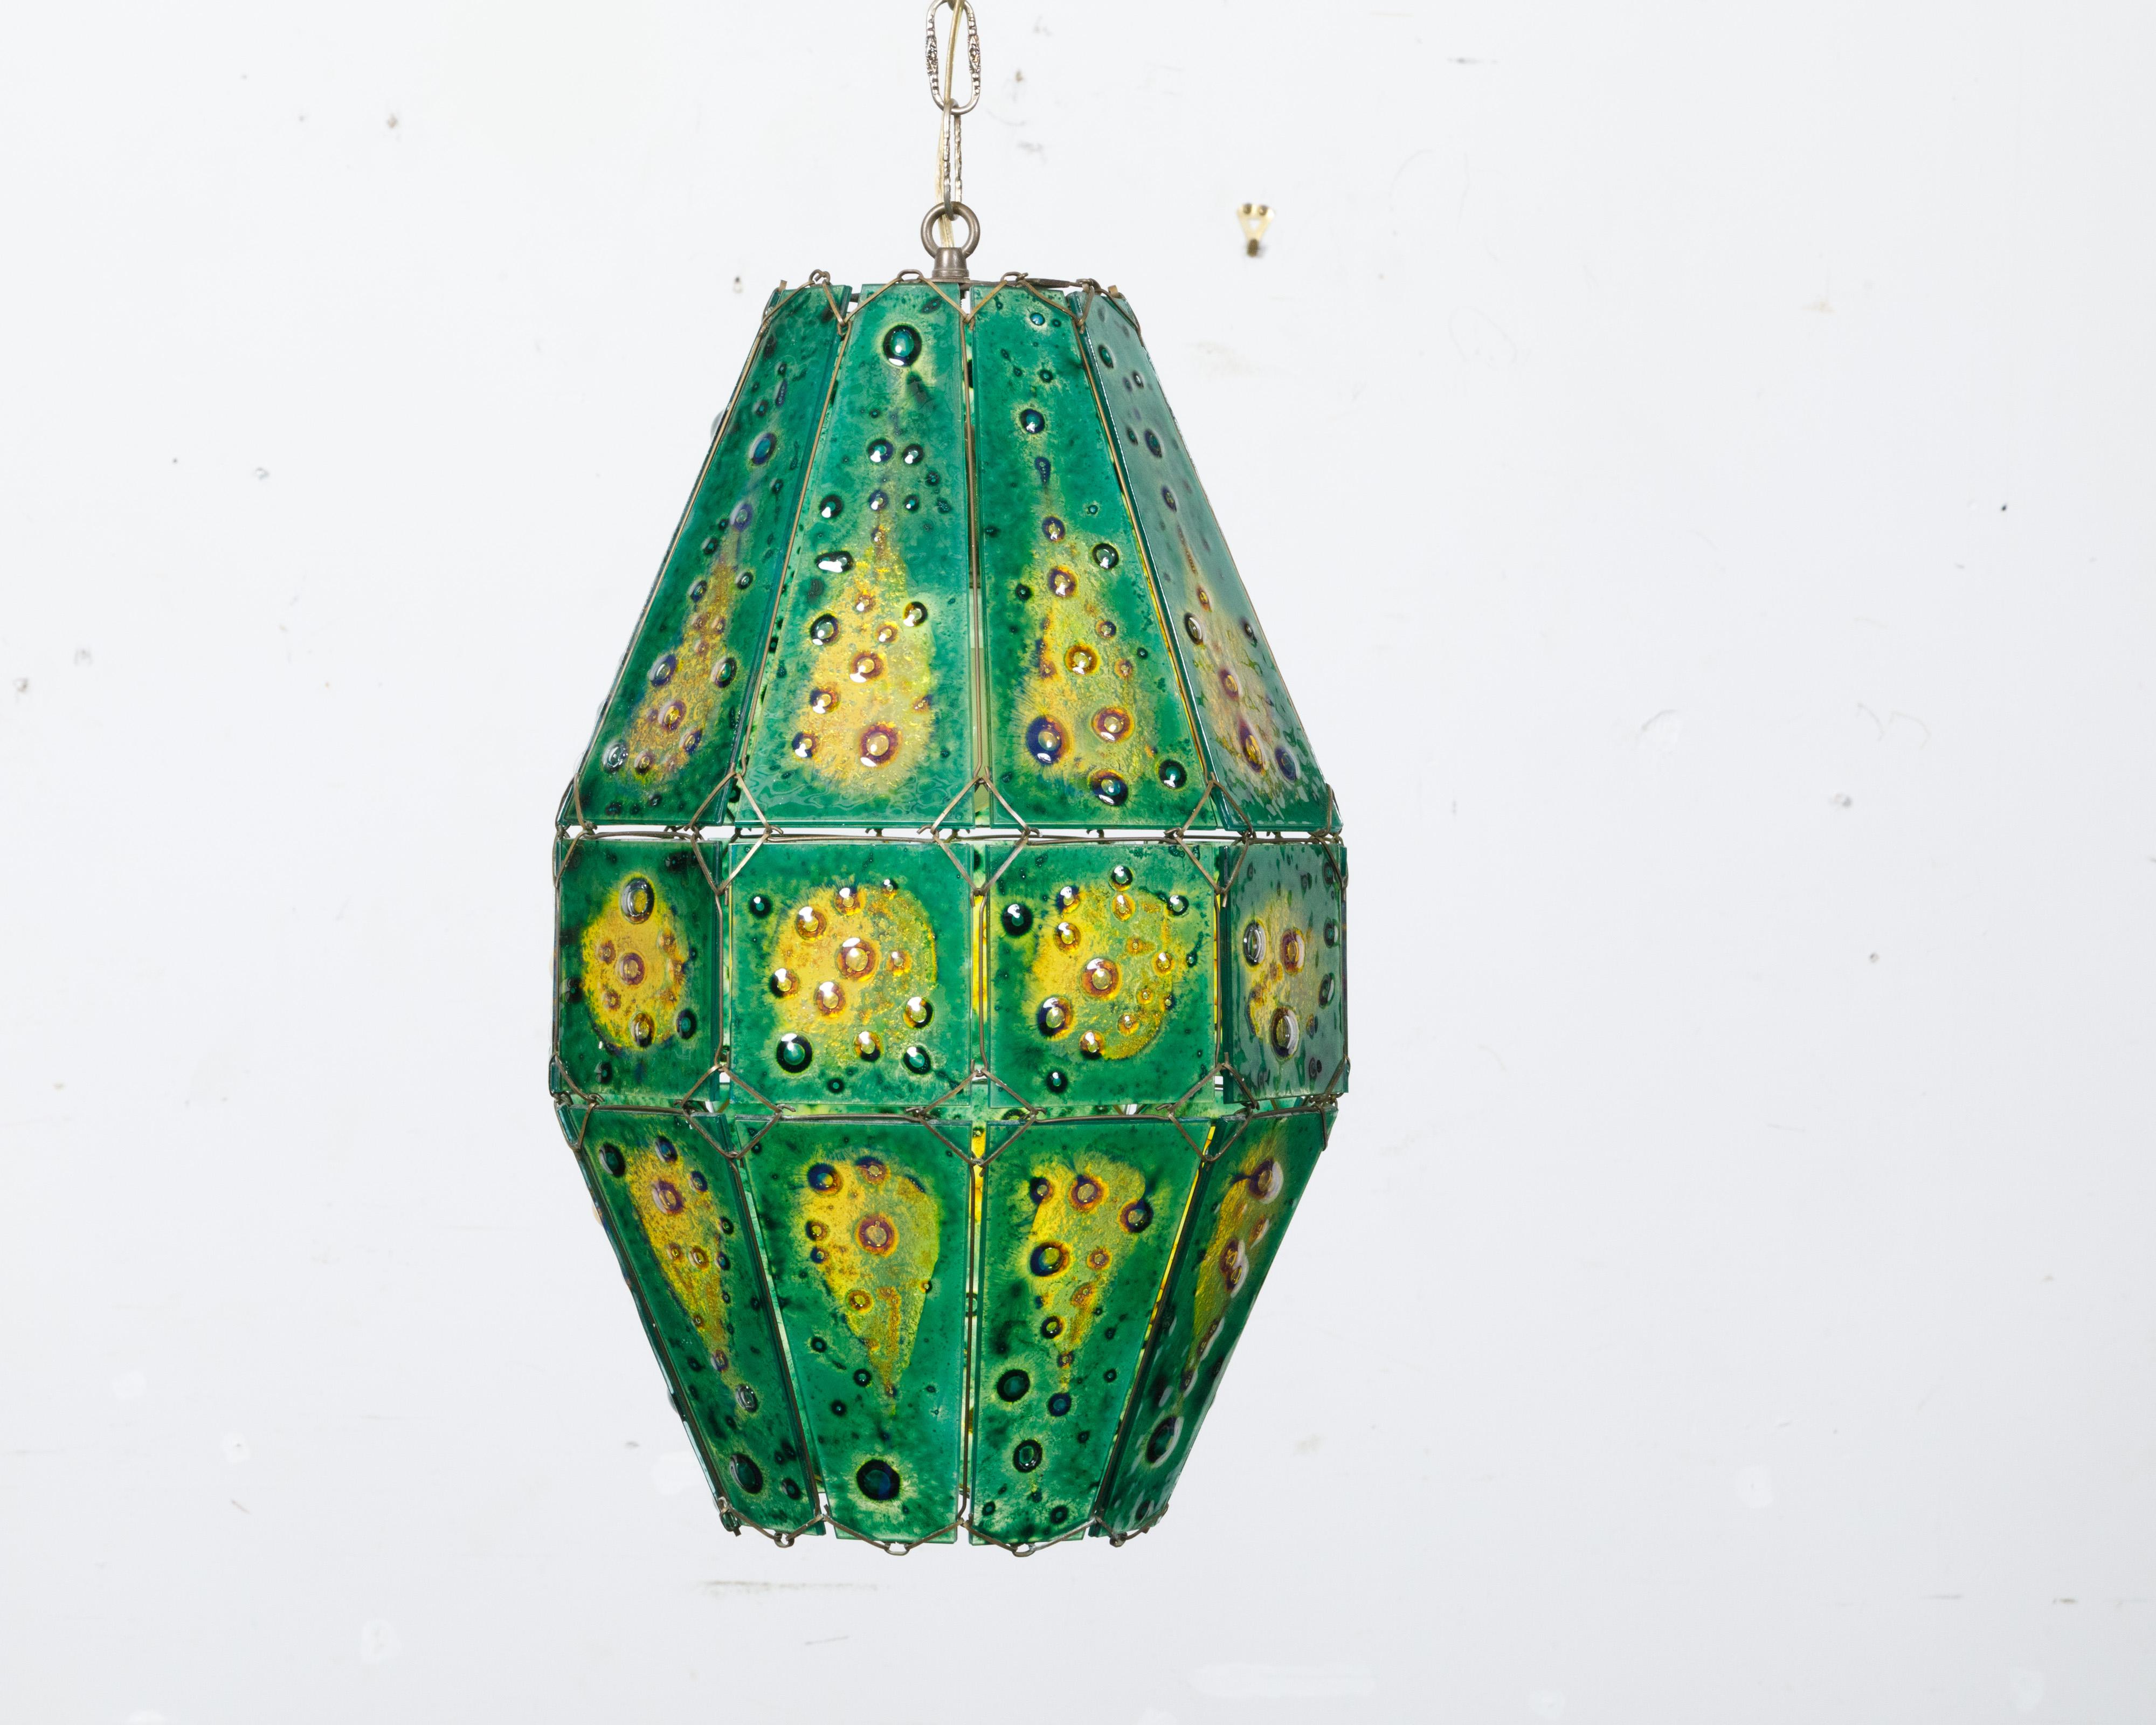 Eine Pendelleuchte aus Kunstglas von Felipe Derflingher aus der Zeit um 1970 mit grünen und gelben Farbtönen. Diese Pendelleuchte aus Kunstglas wurde in den 1970er Jahren von dem angesehenen Künstler Felipe Derflingher entworfen und ist ein